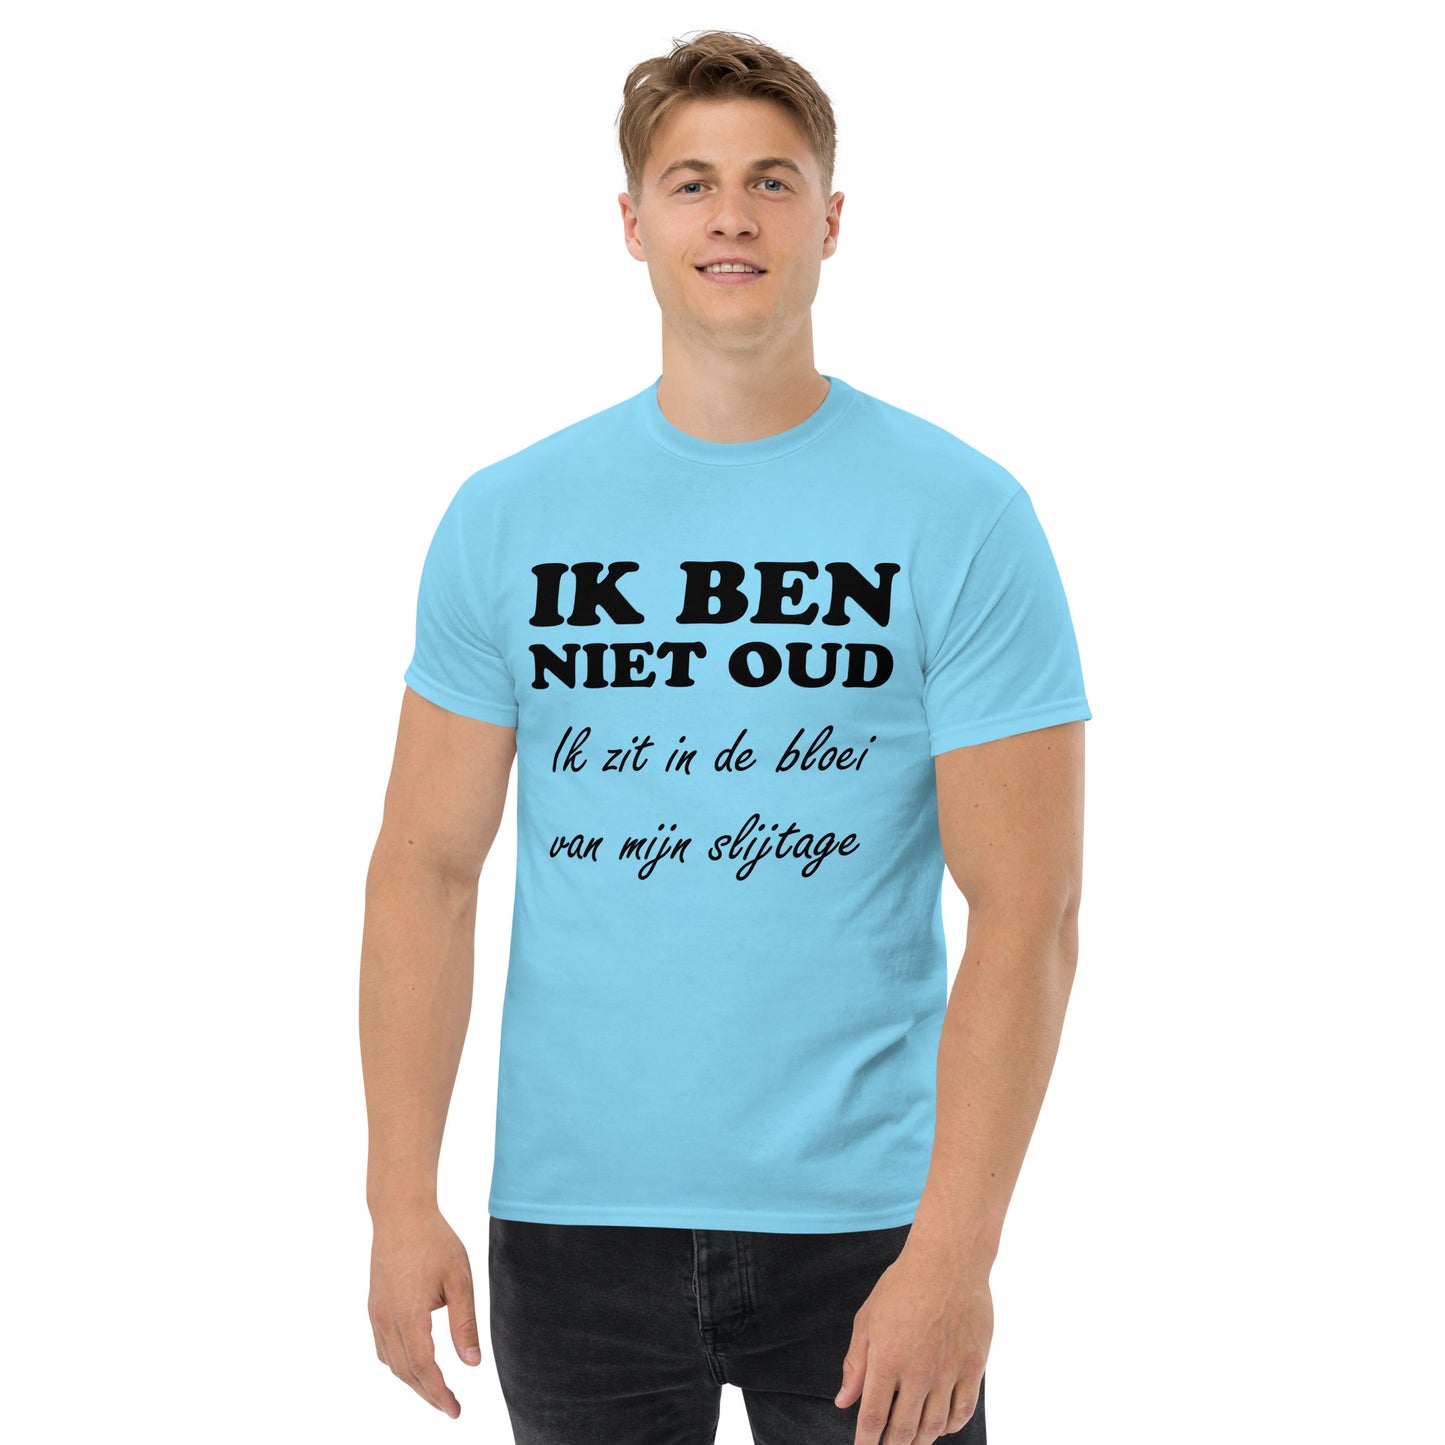 Sky T-shirt with the text "IK BEN NIET OUD ik zit in de bloei van mijn slijtage"